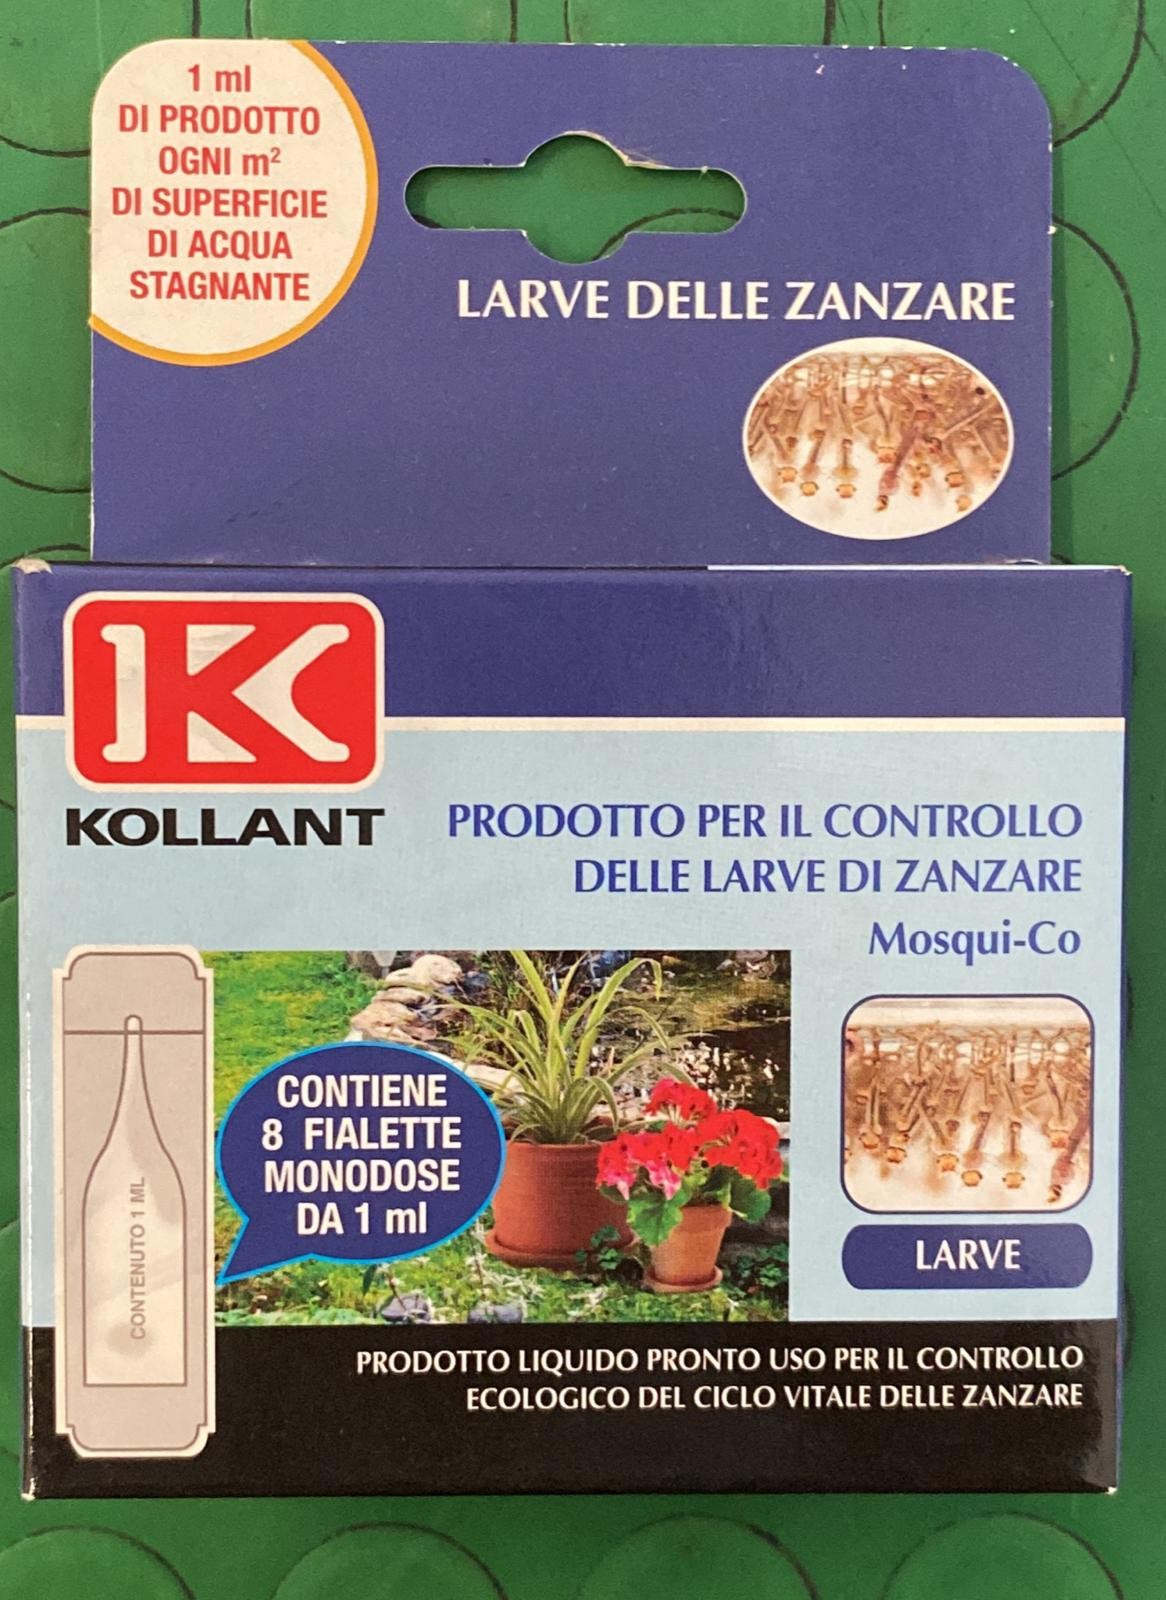 Mosqui co - Kollant - Larve - Zanzare - Liquido - Fialette - Controllo - Ecologico